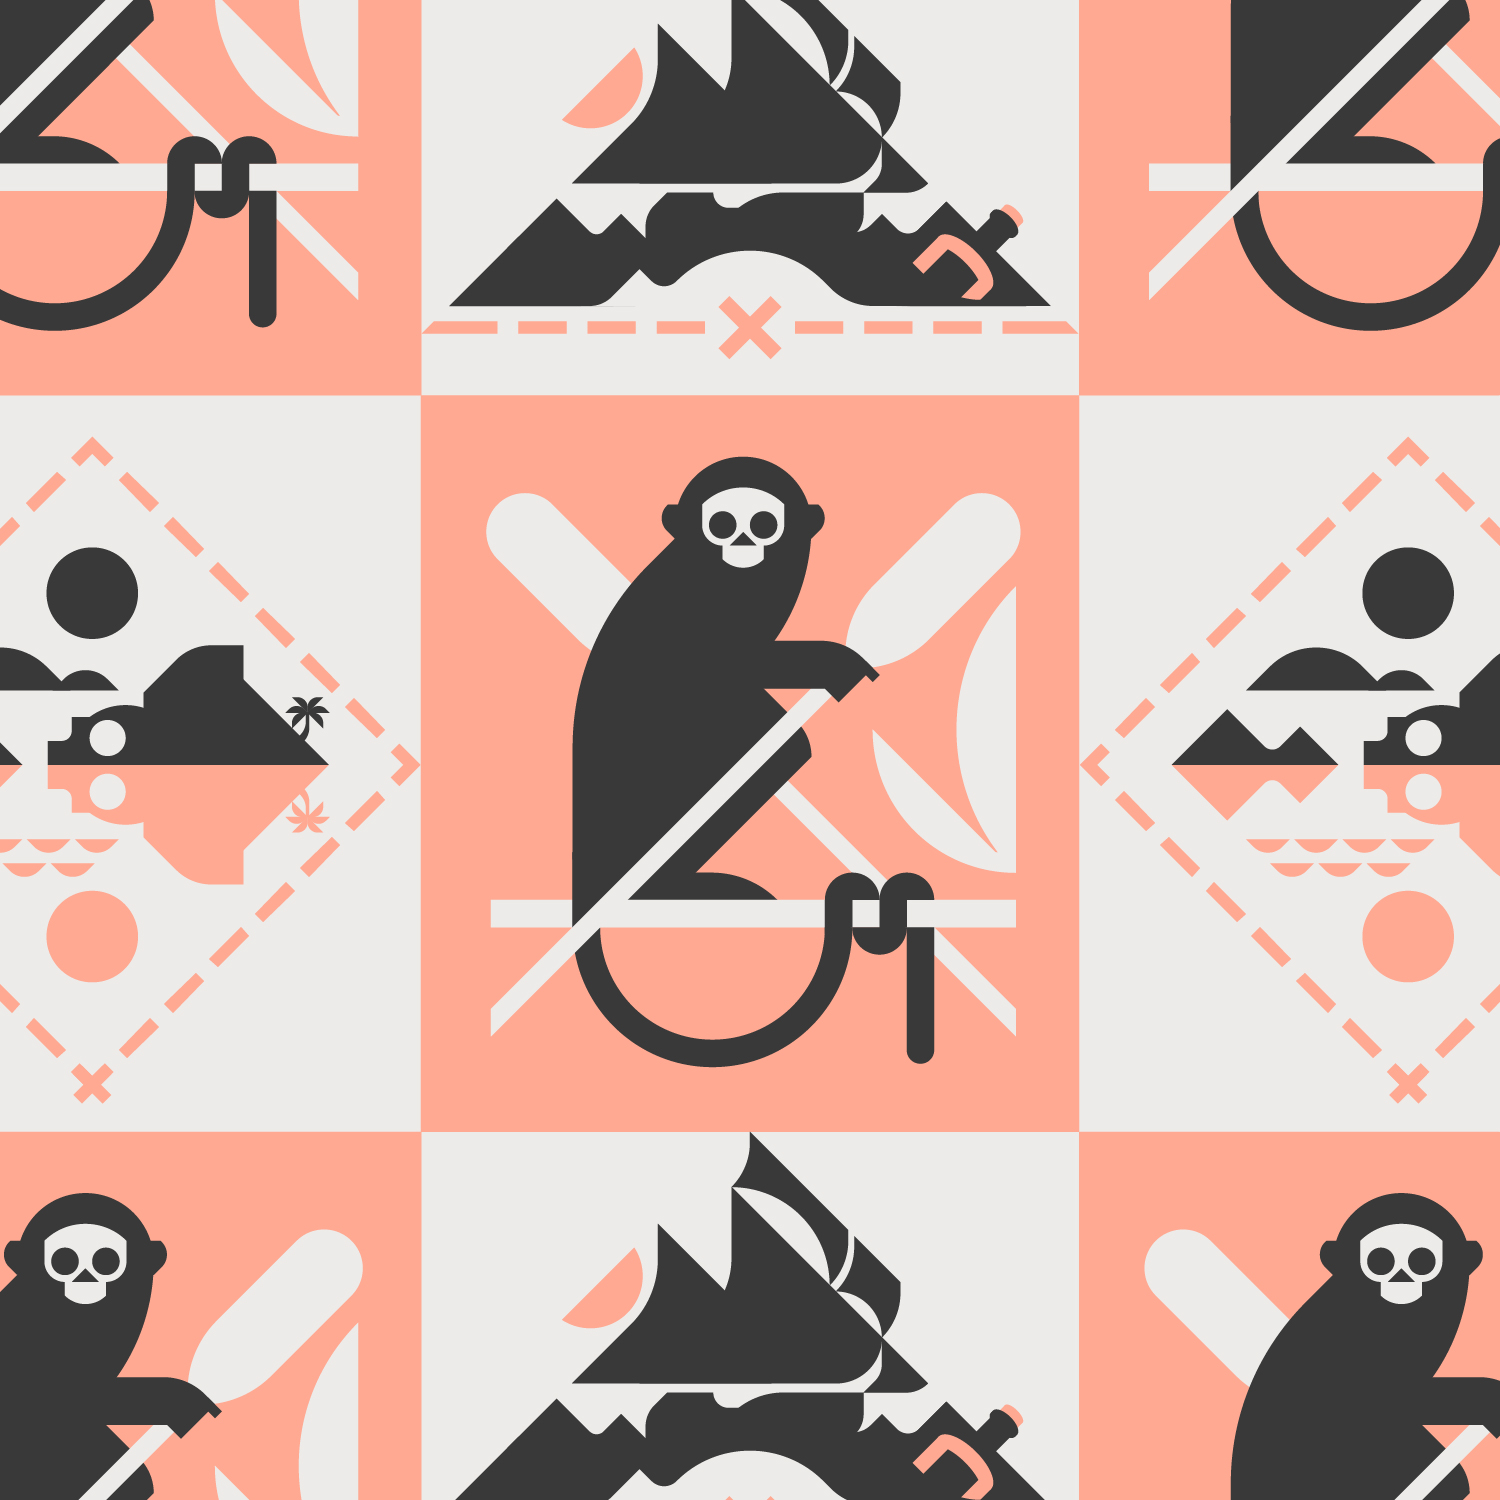 Logo de la flotte de Pirates, singe et navire icônes de la piraterie, île au trésor.